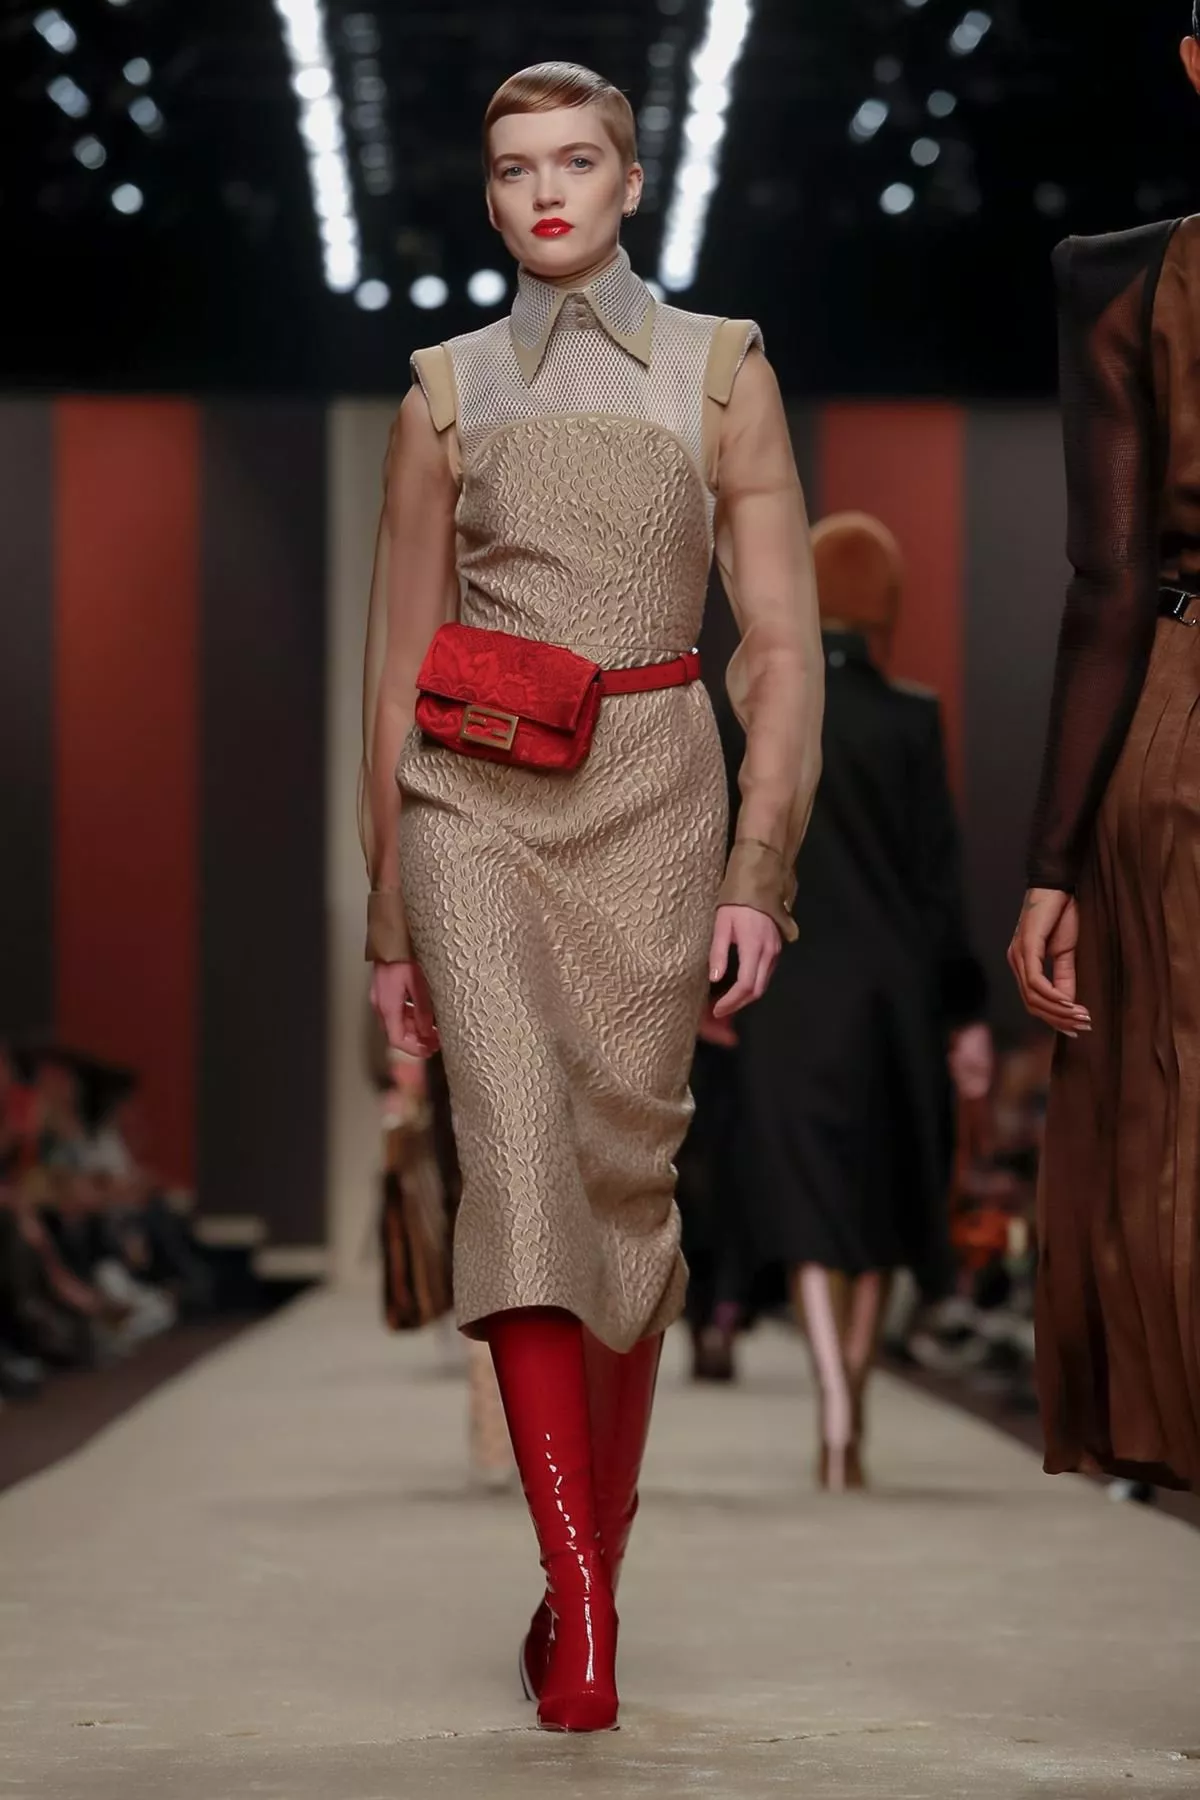 عرض Fendi لخريف 2019 ضمن أسبوع الموضة في ميلانو: مزيج بين الأنثويّ والذكوريّ بلمسات Karl Lagerfeld الأيقونيّة